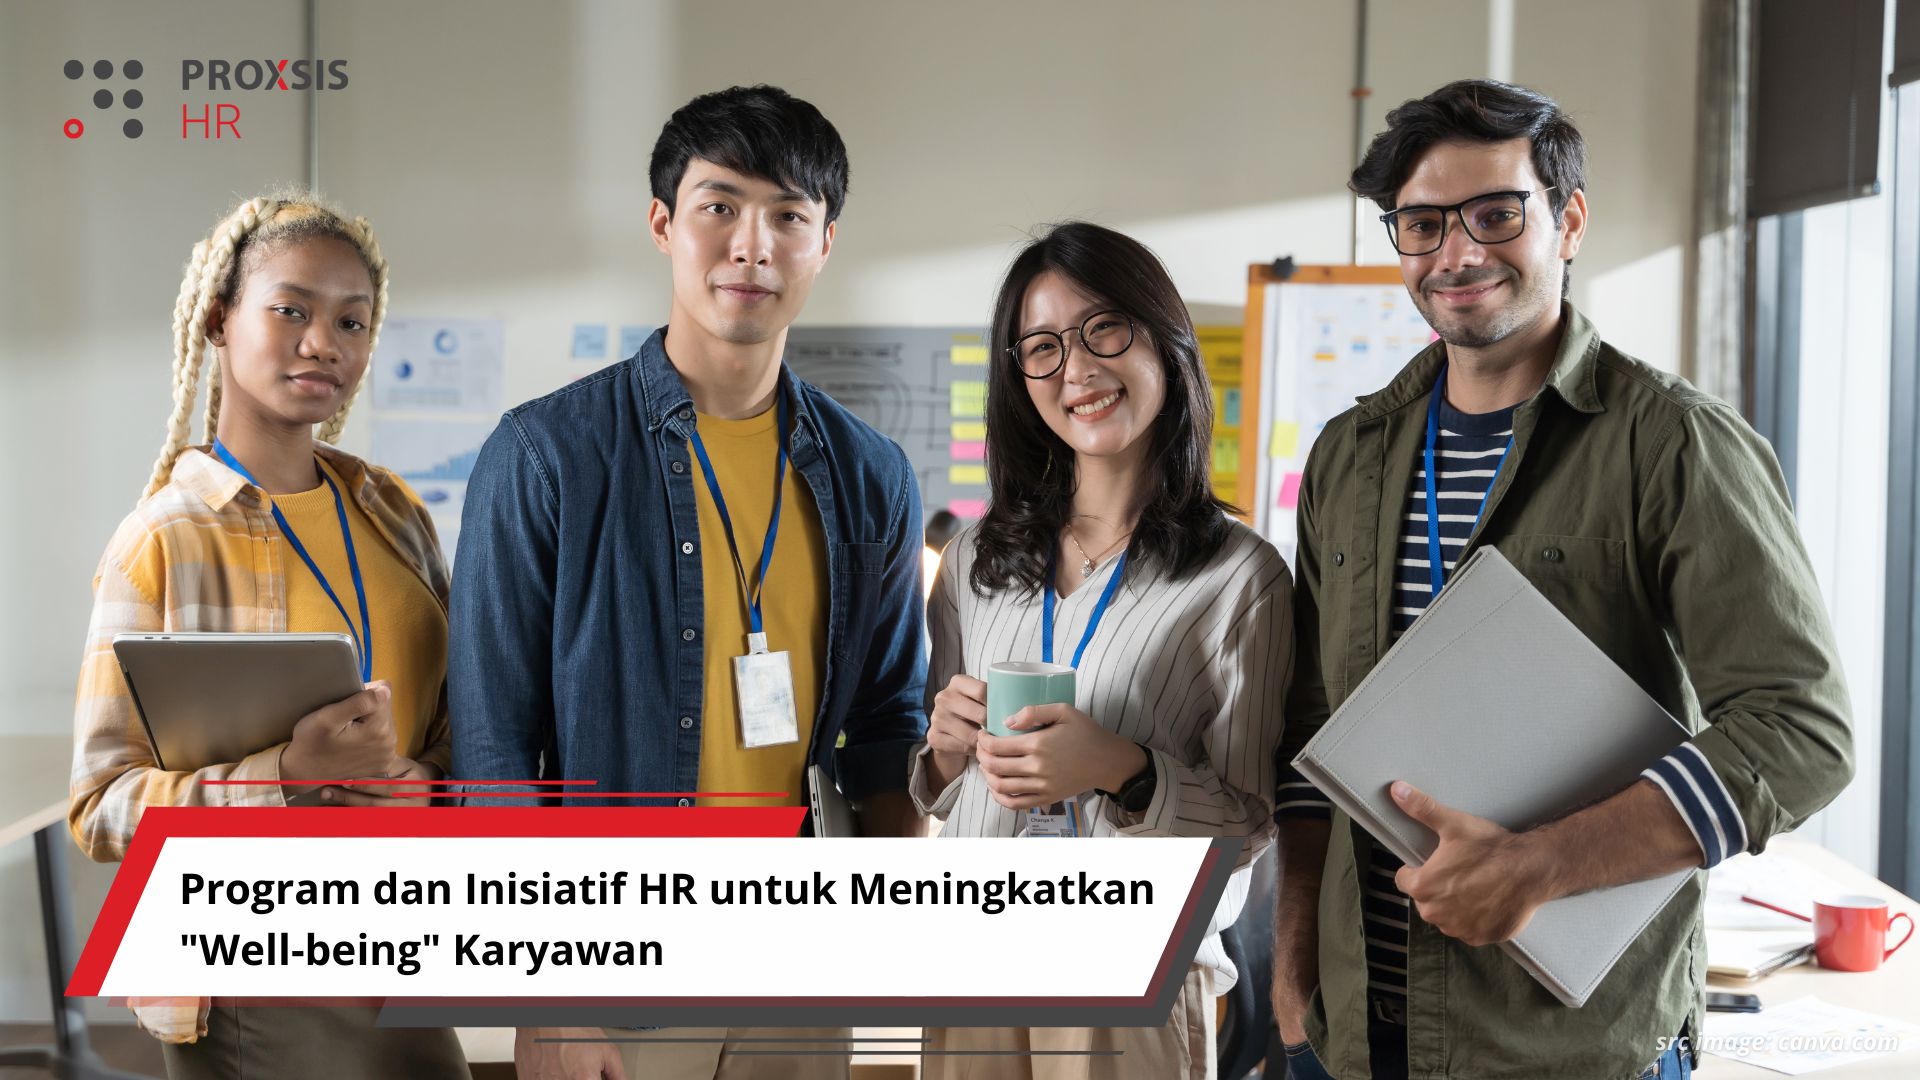 Program dan Inisiatif HR untuk Meningkatkan "Well-being" Karyawan